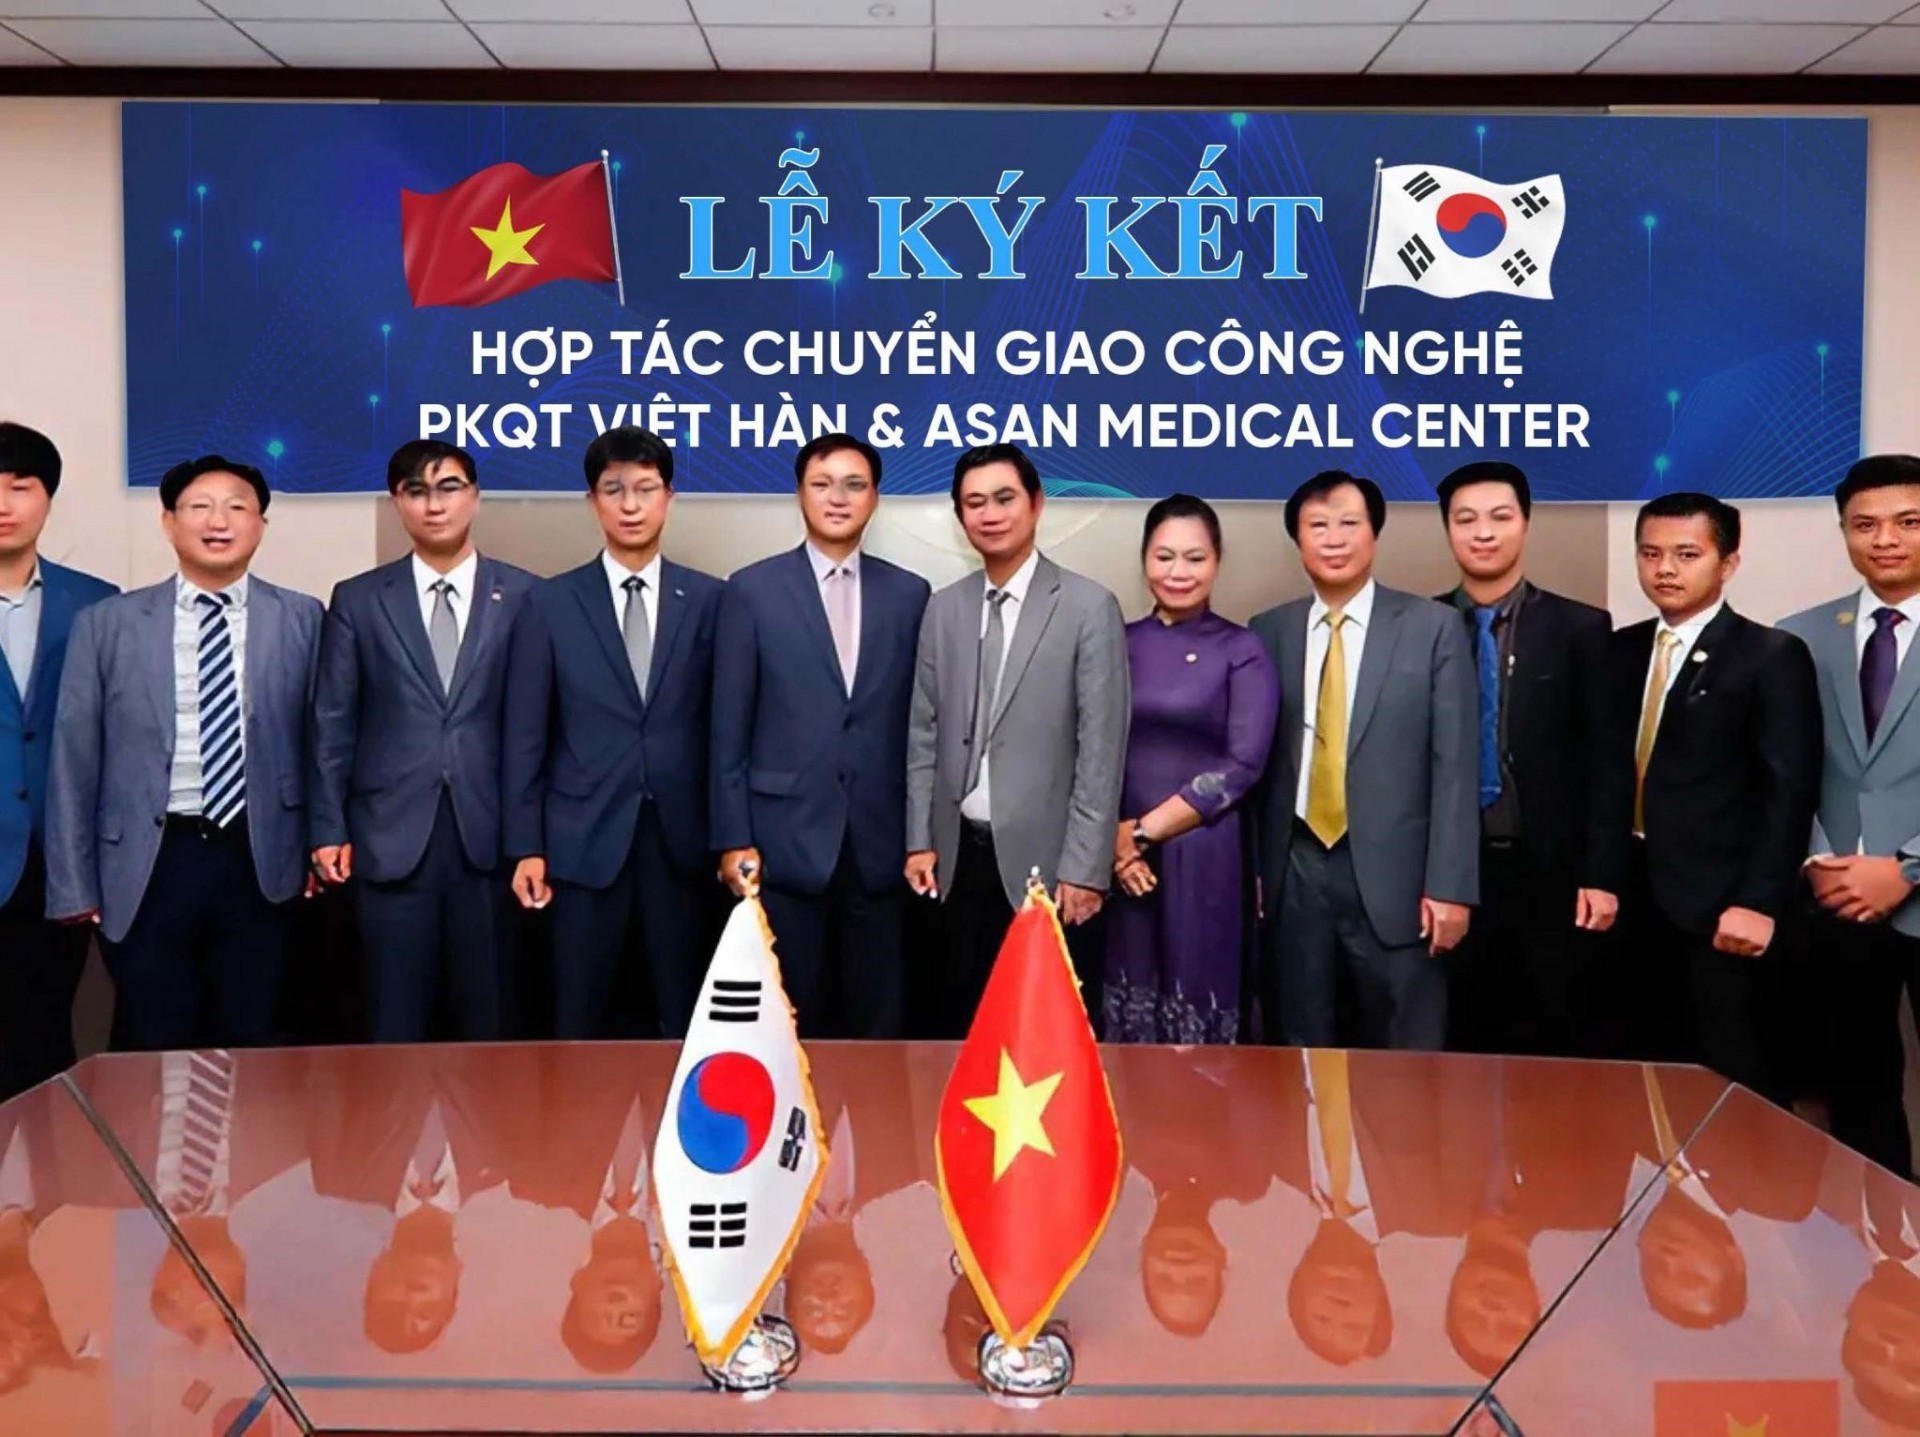 Phòng khám Quốc Tế Việt Hàn “bắt tay” Asan Medical Center - bệnh viện top 10 Hàn Quốc